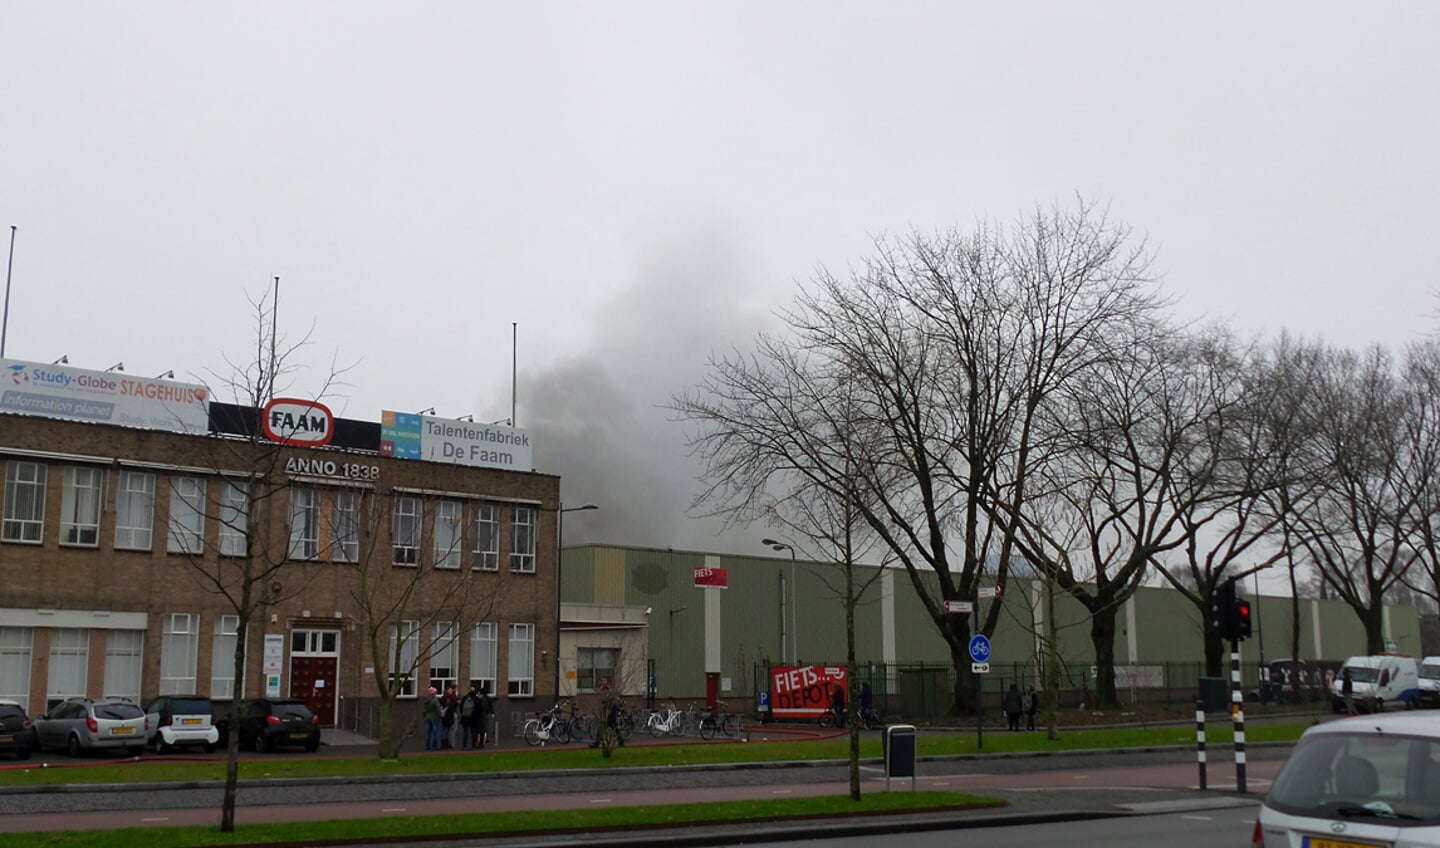 De brand bij De Faam vraagt veel inzet van de brandweer.